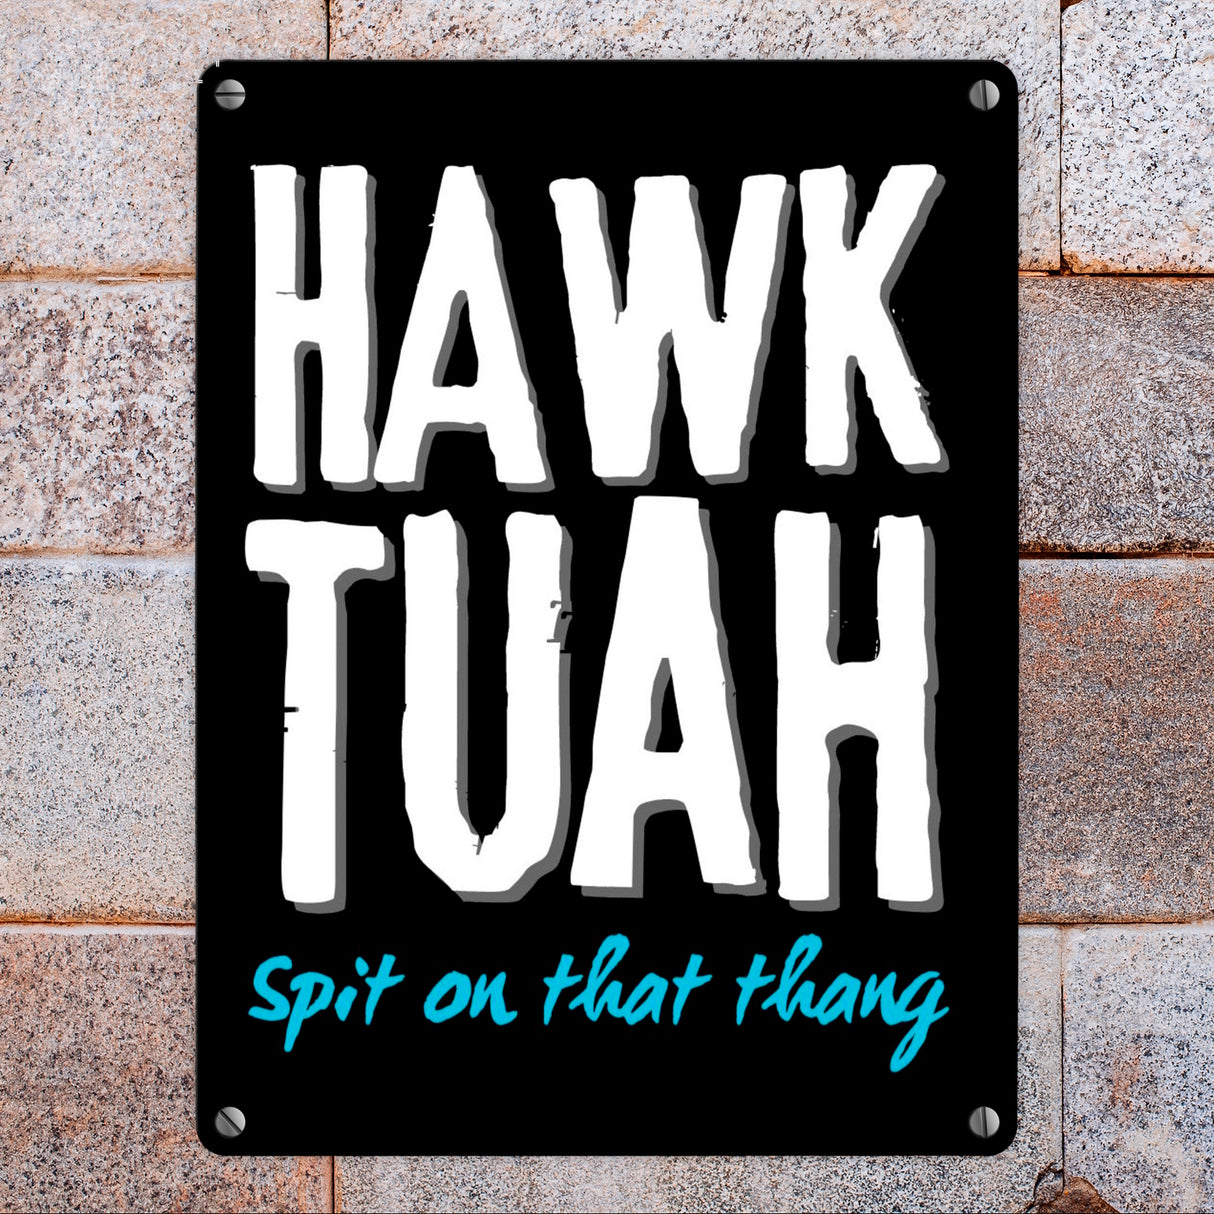 Hawk Tuah Metallschild in 15x20 cm mit Spruch Spit on that thang